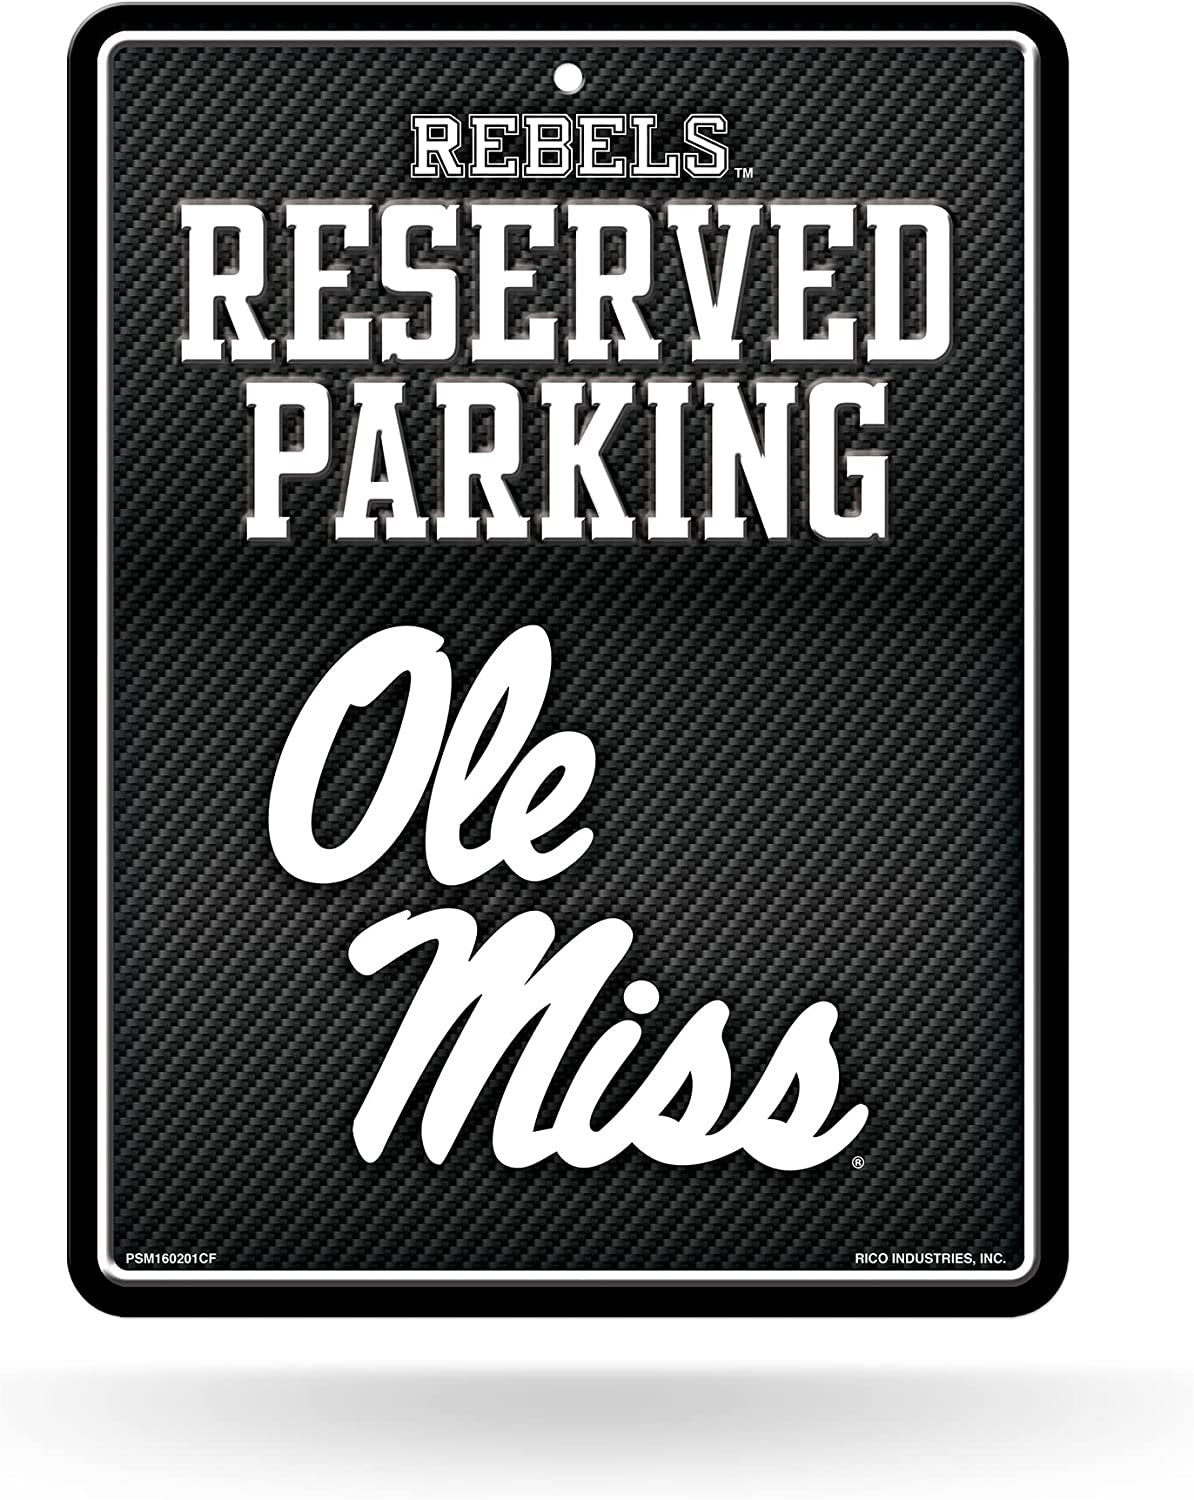 University of Mississippi Rebels Ole Miss Metal Parking Novelty Wall Sign 8.5 x 11 Inch Carbon Fiber Design